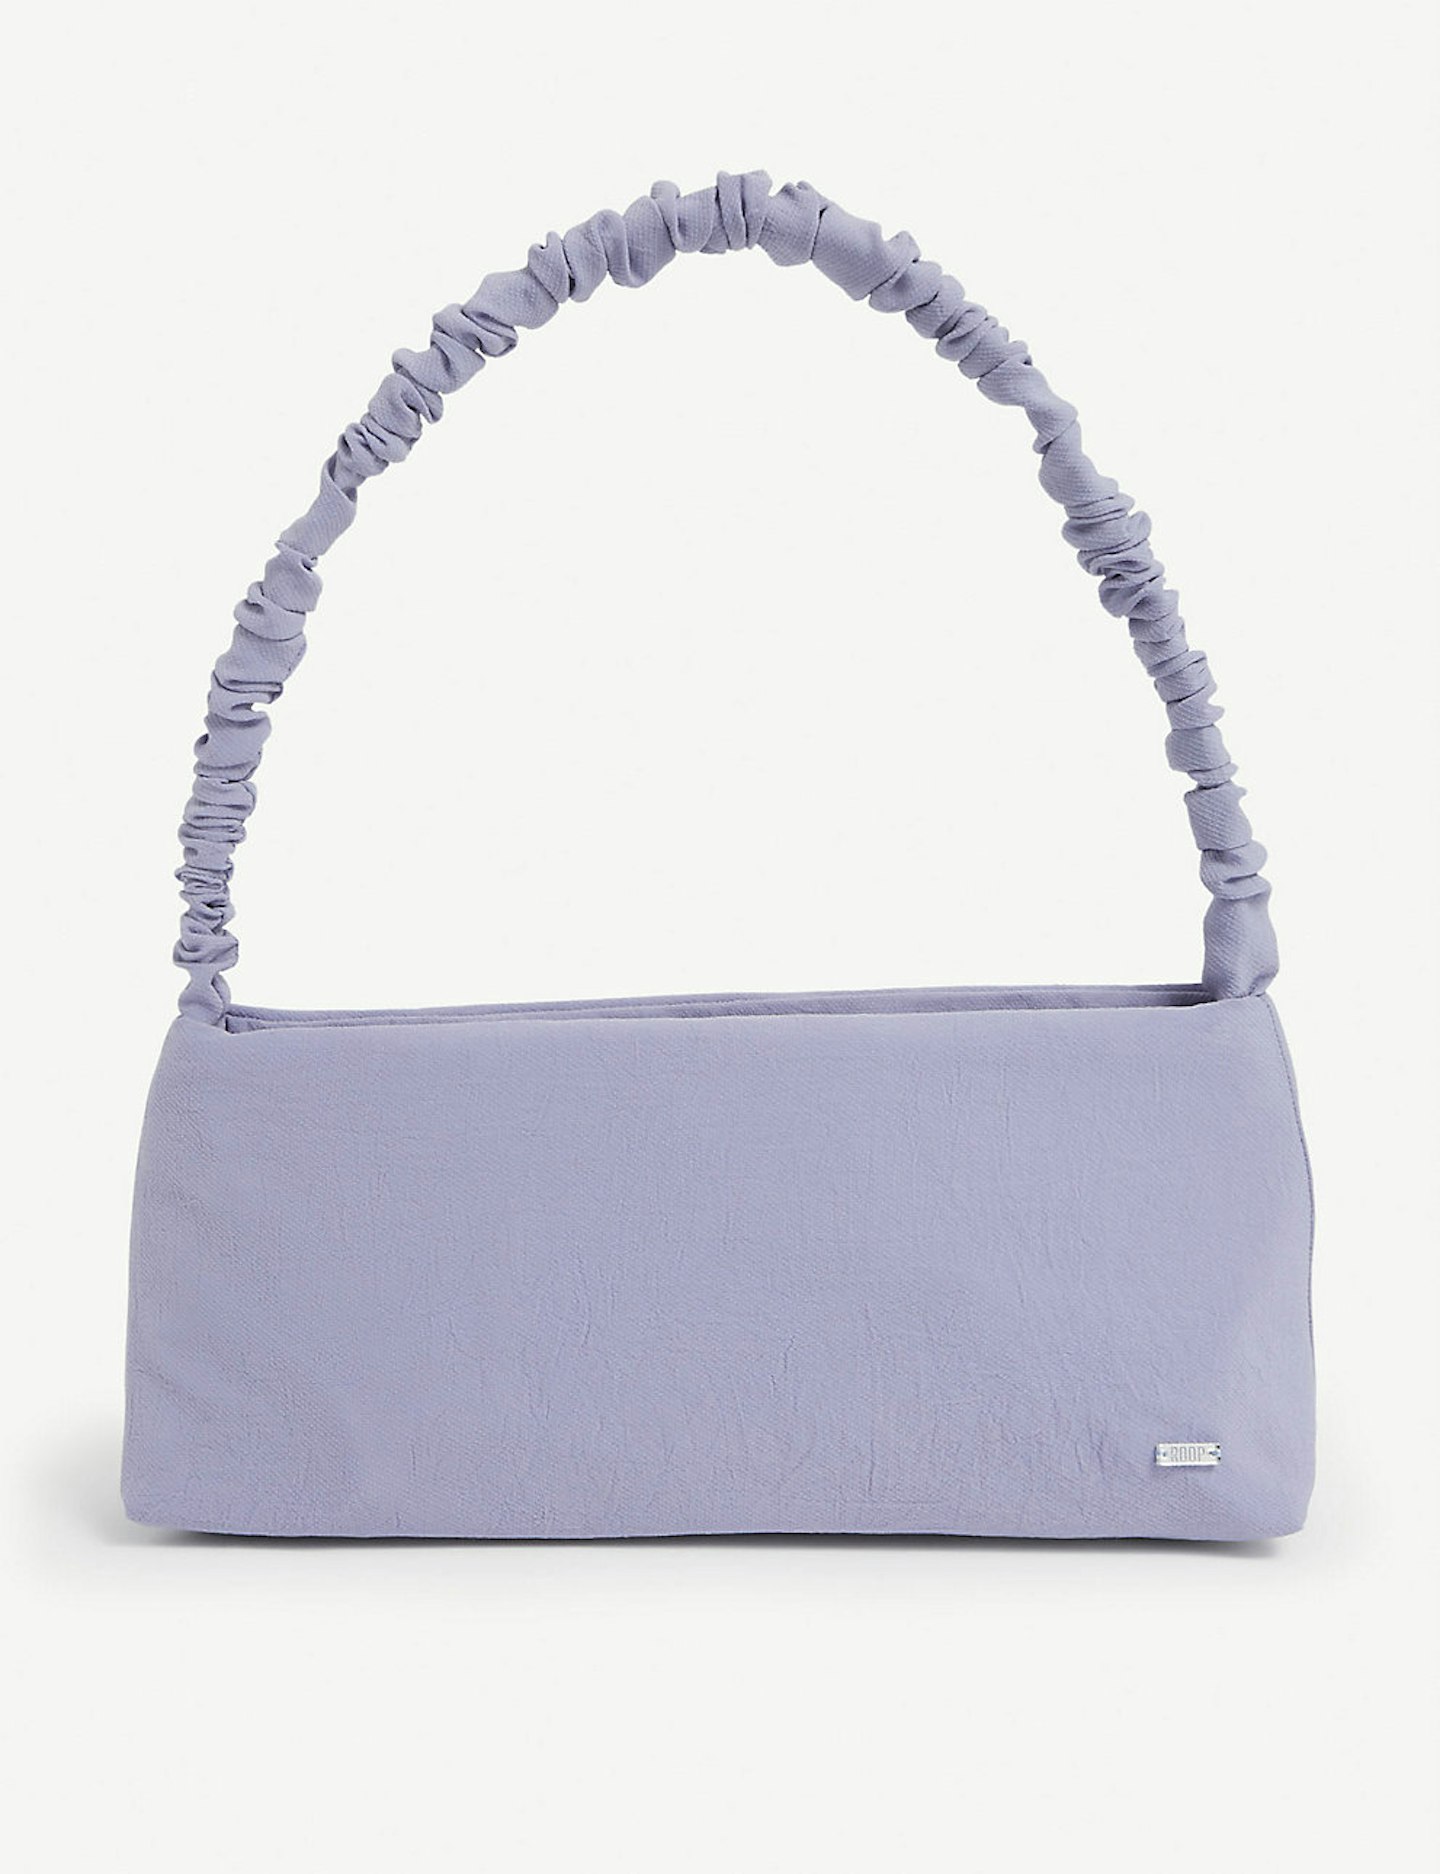 ROOP, Monica Textured-Linen Shoulder Bag, £95